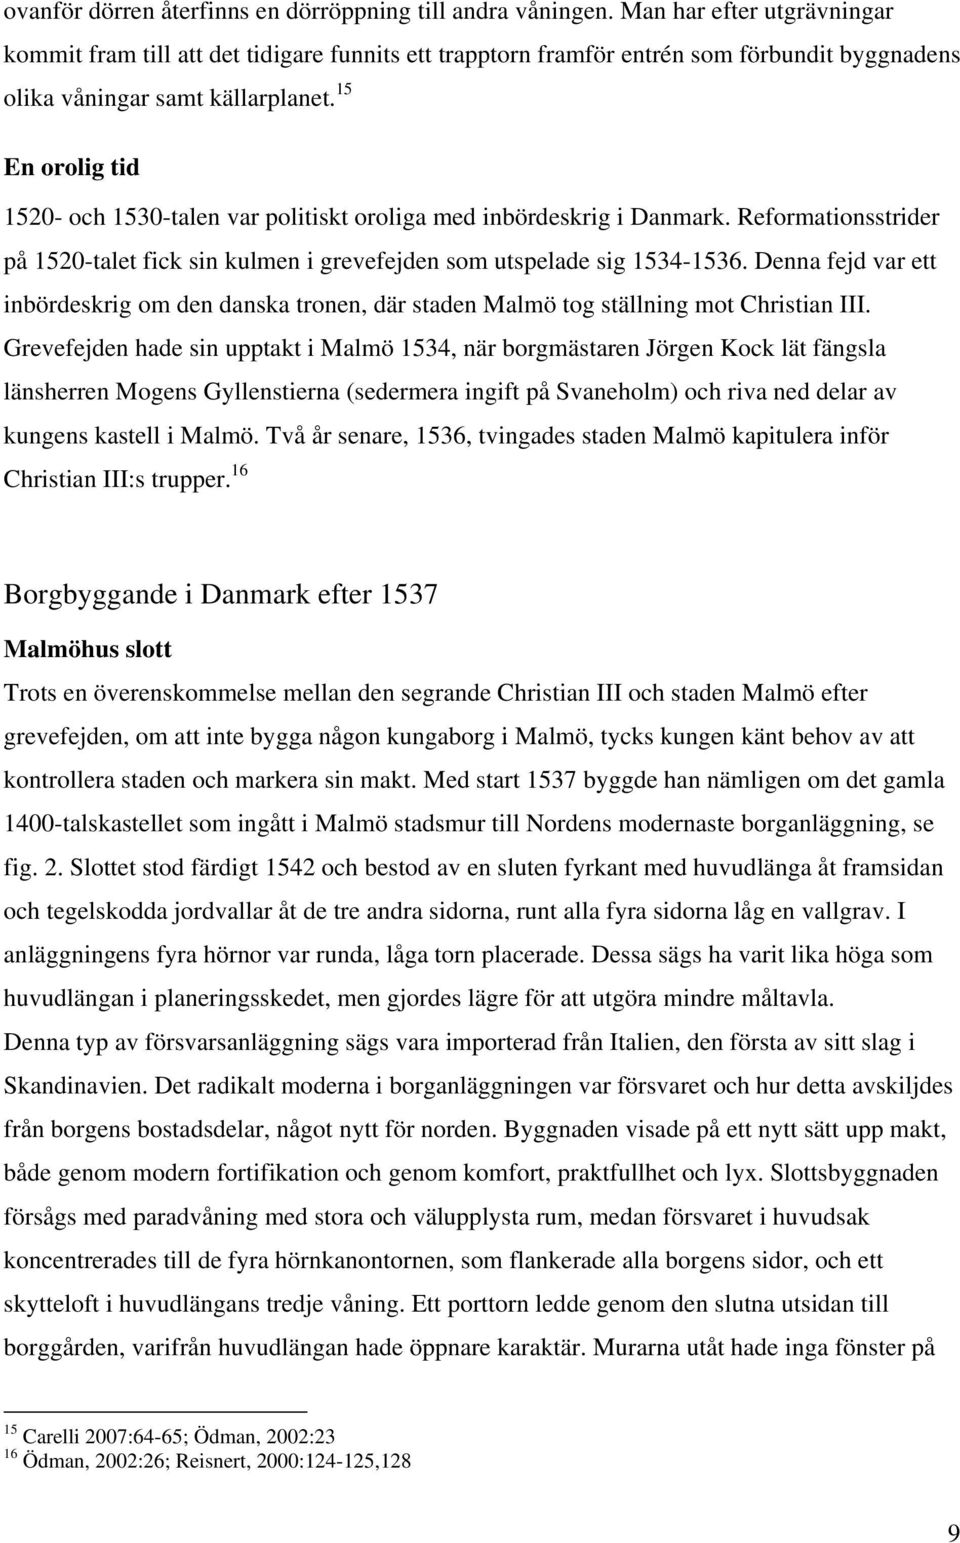 15 En orolig tid 1520- och 1530-talen var politiskt oroliga med inbördeskrig i Danmark. Reformationsstrider på 1520-talet fick sin kulmen i grevefejden som utspelade sig 1534-1536.